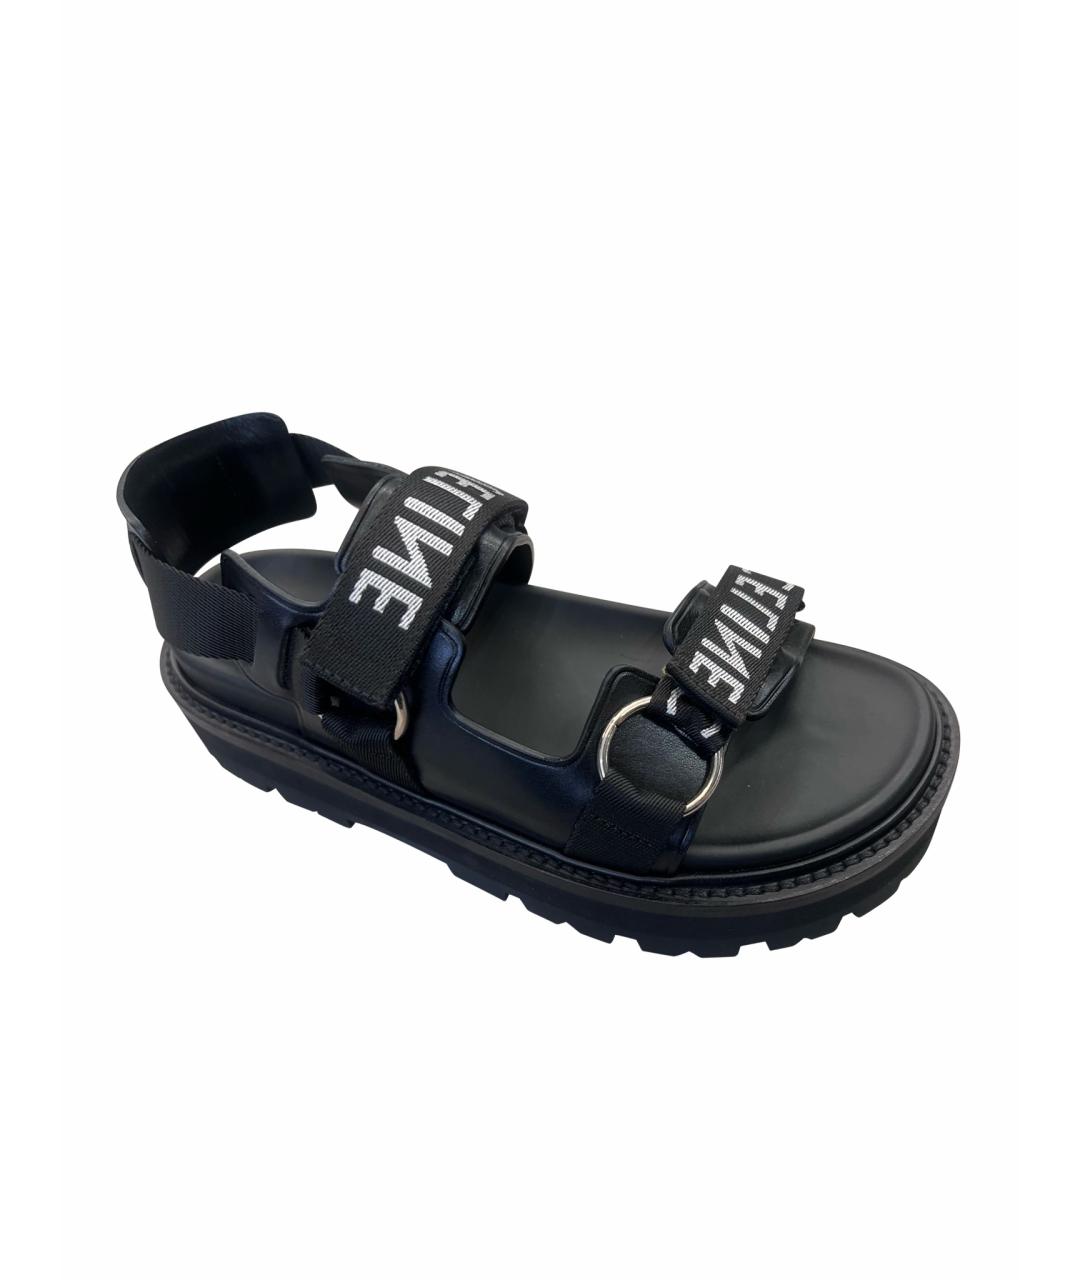 CELINE PRE-OWNED Черные сандалии, фото 1